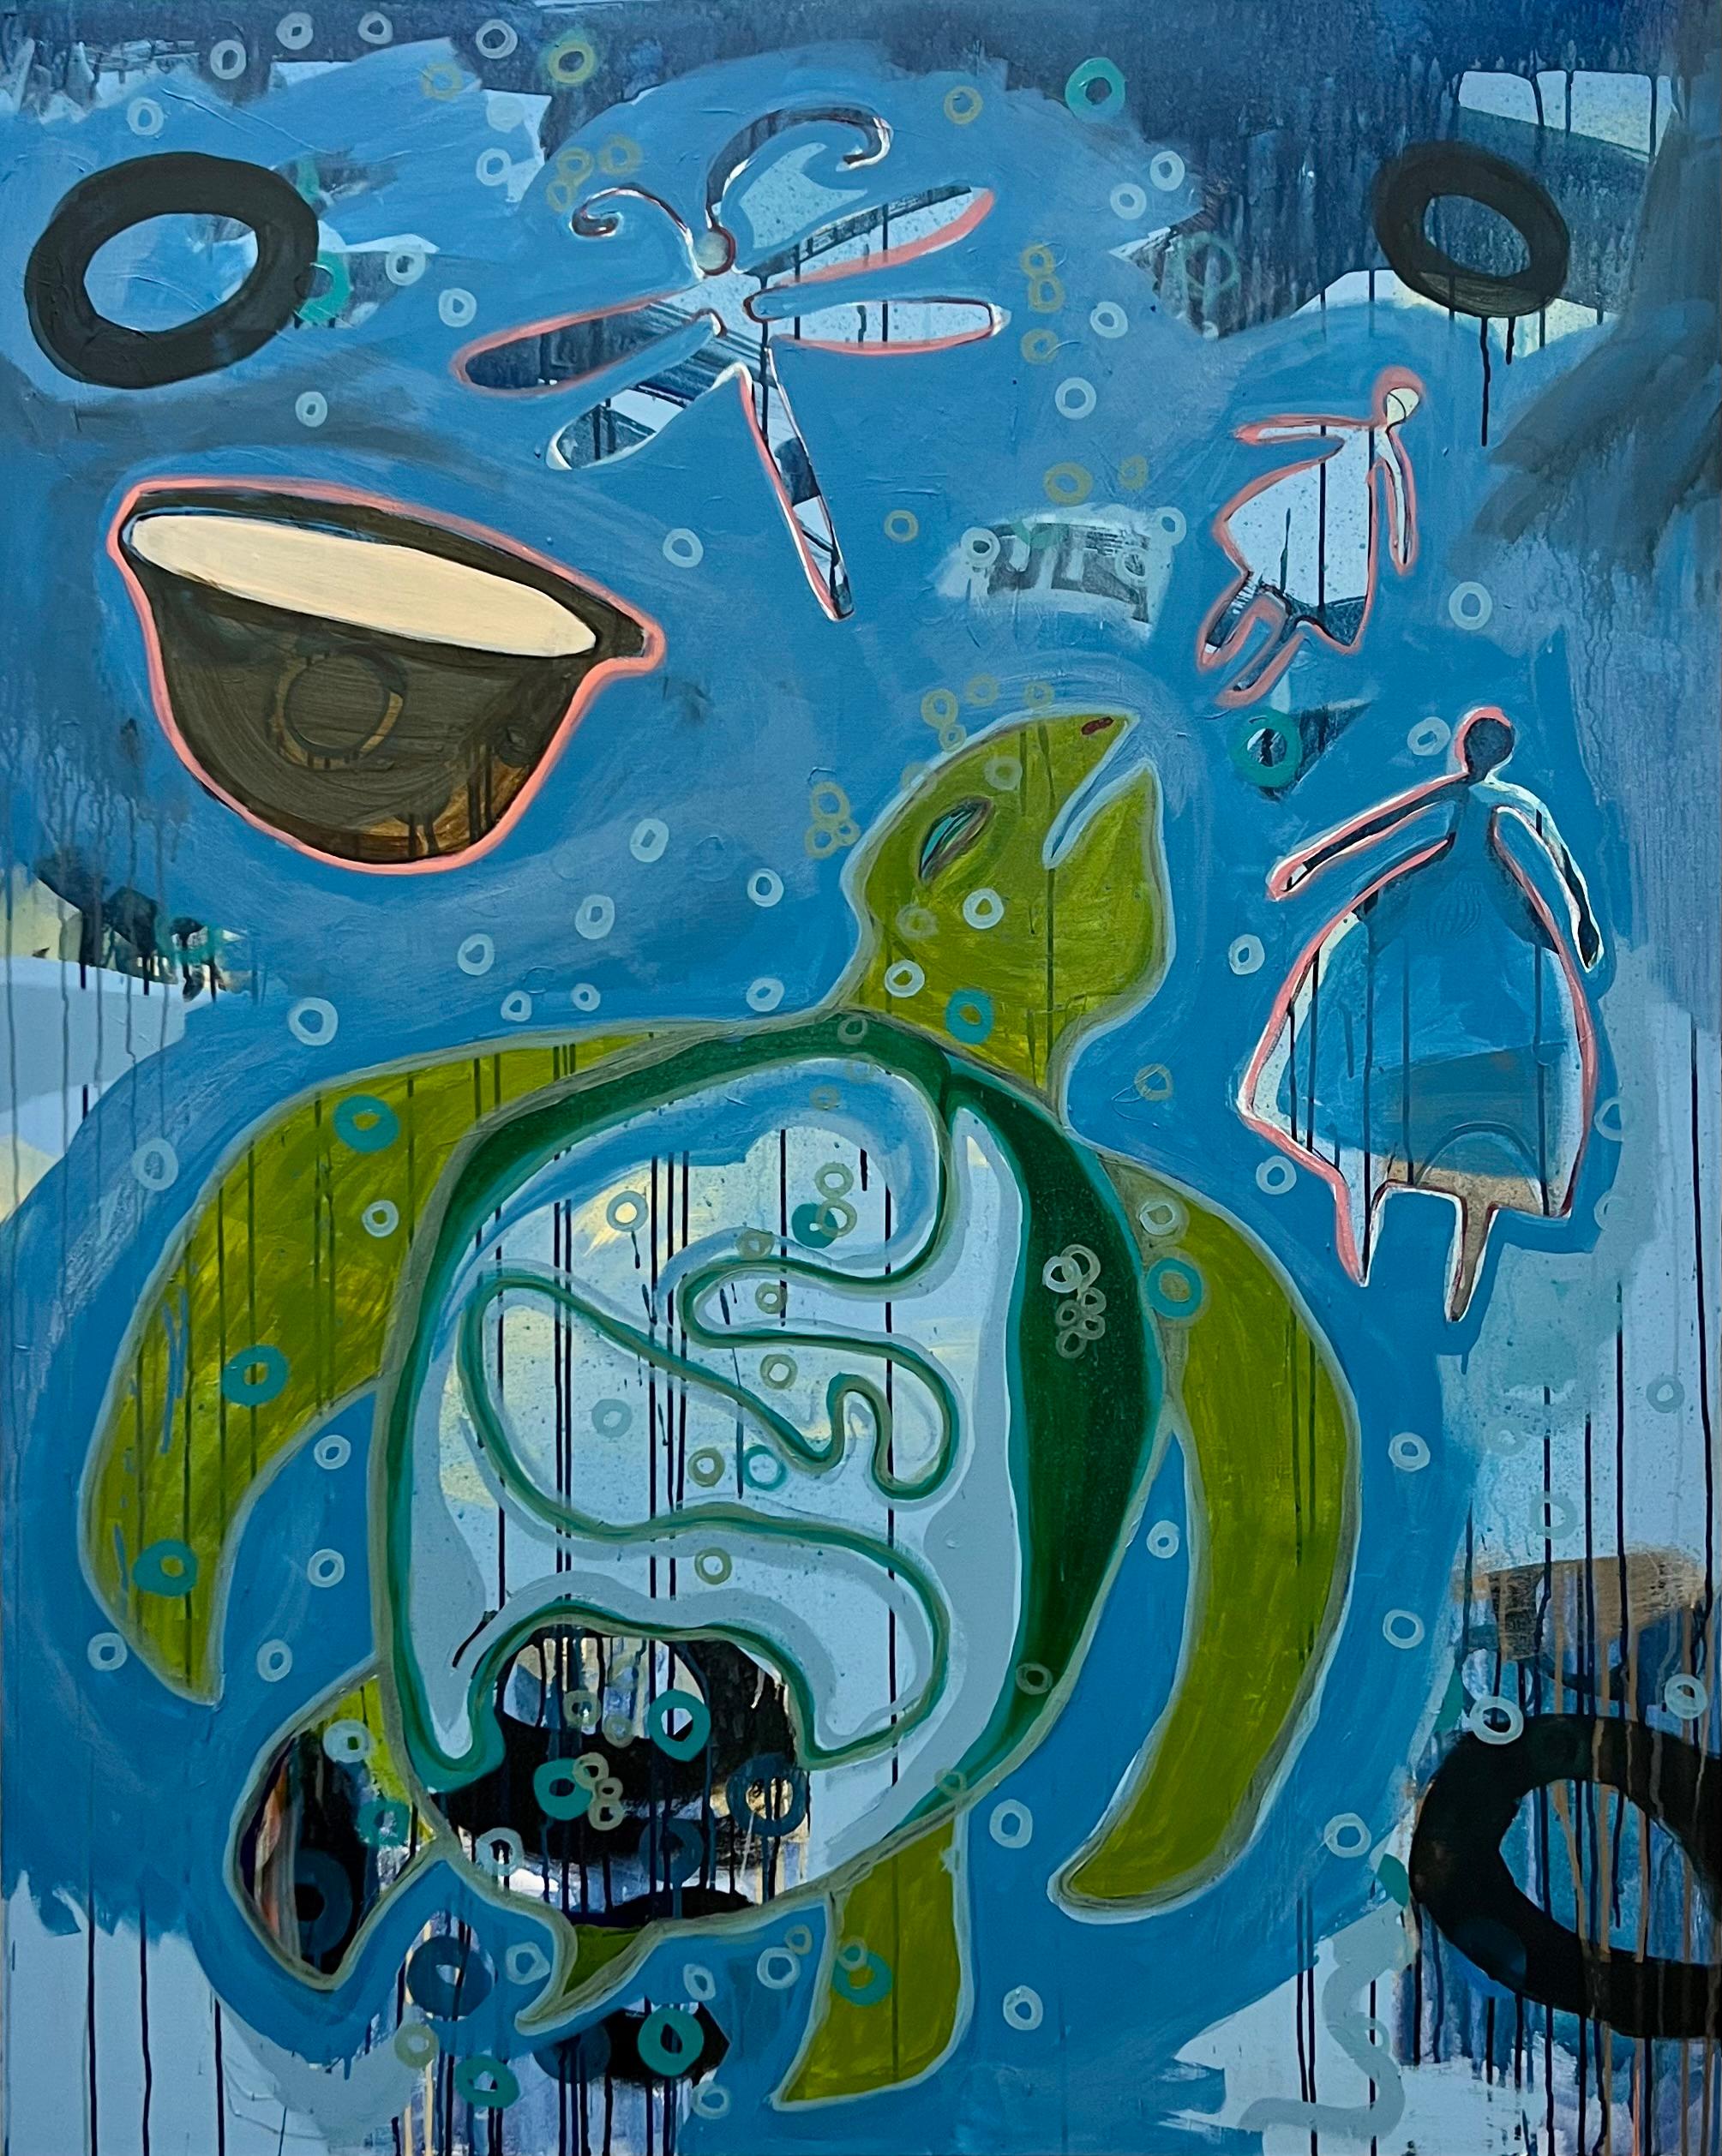 Le rêve, de Melanie Yazzie, Navajo, peinture, verticale, tortue, bleu, vert

En tant que graveur, peintre et sculpteur, mon travail s'appuie sur mon riche héritage Diné (Navajo). Le travail que je réalise tente de suivre le dicton Diné (Navajo)